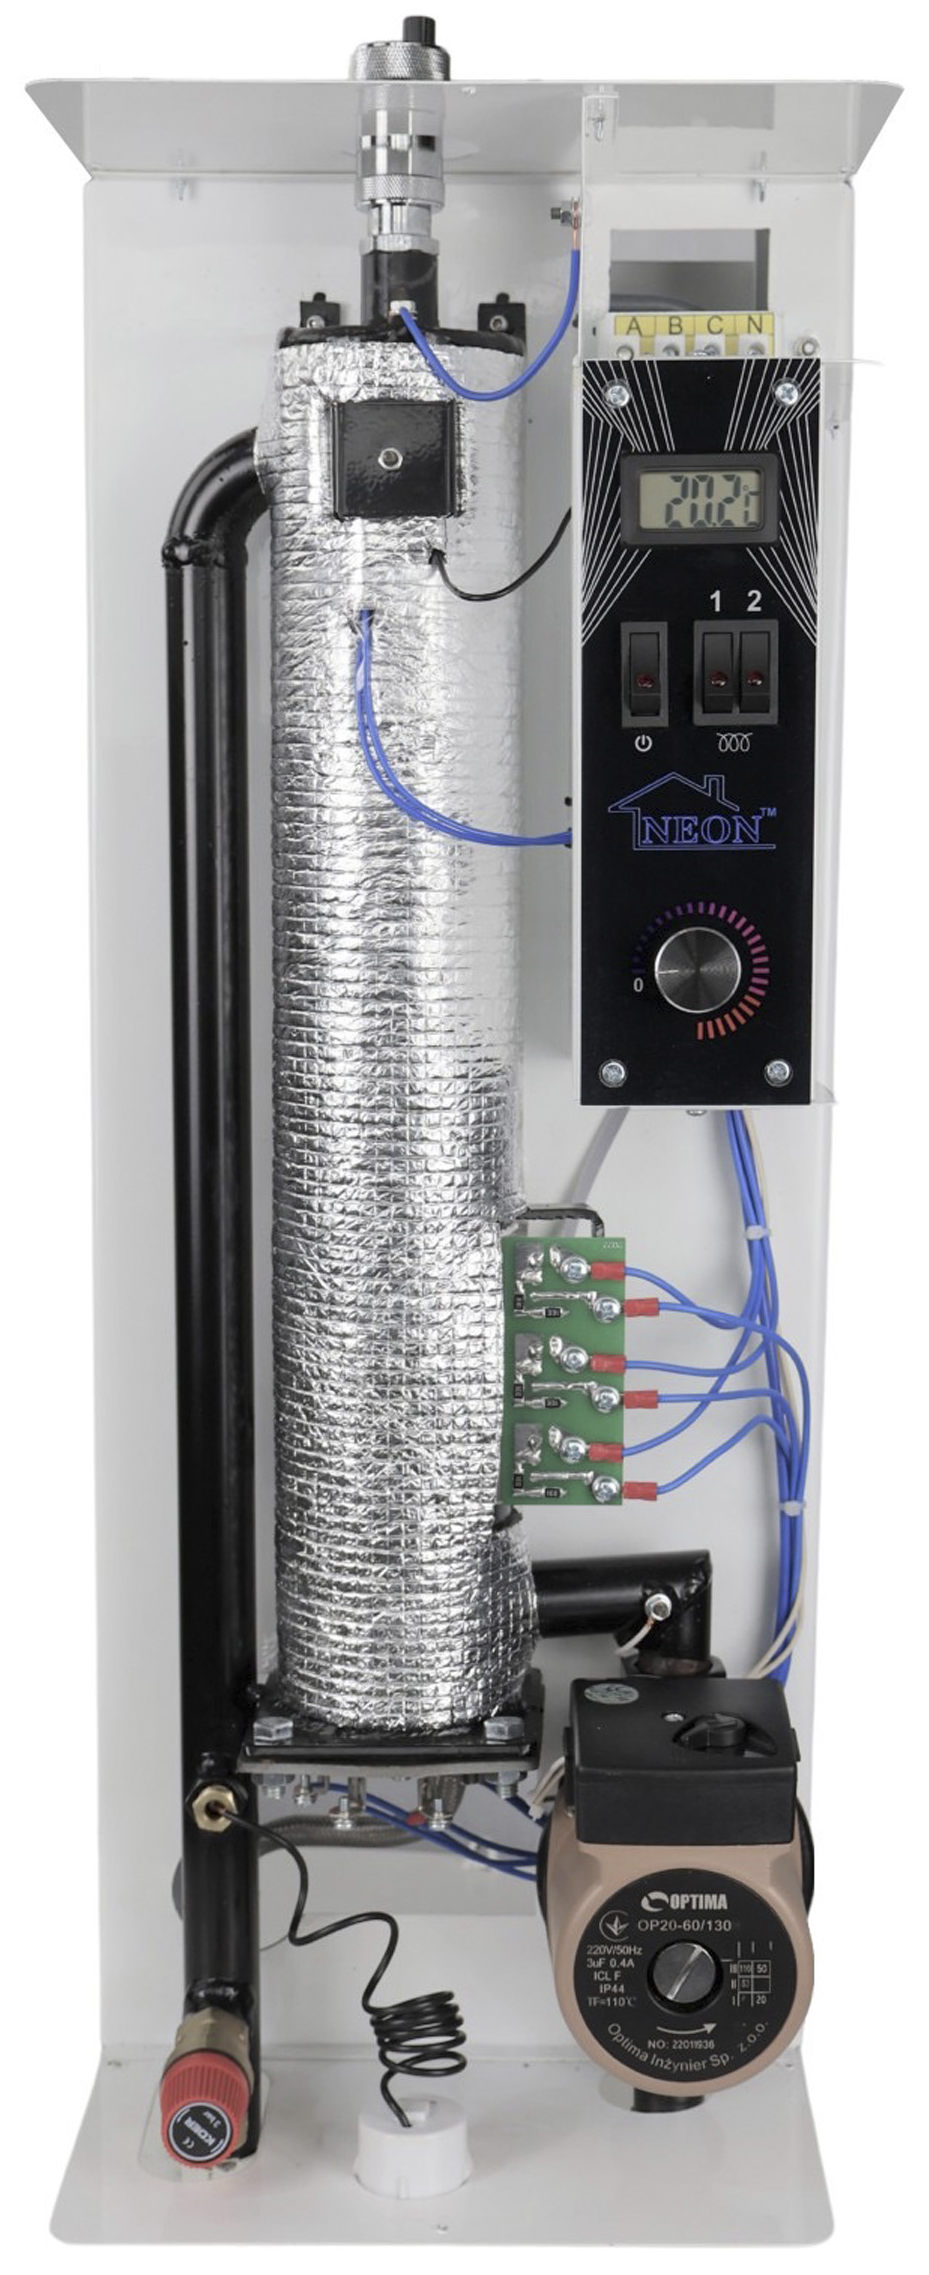 в продаже Электрический котел Neon Pro plus Advance 9 кВт с термостатом Siemens - фото 3